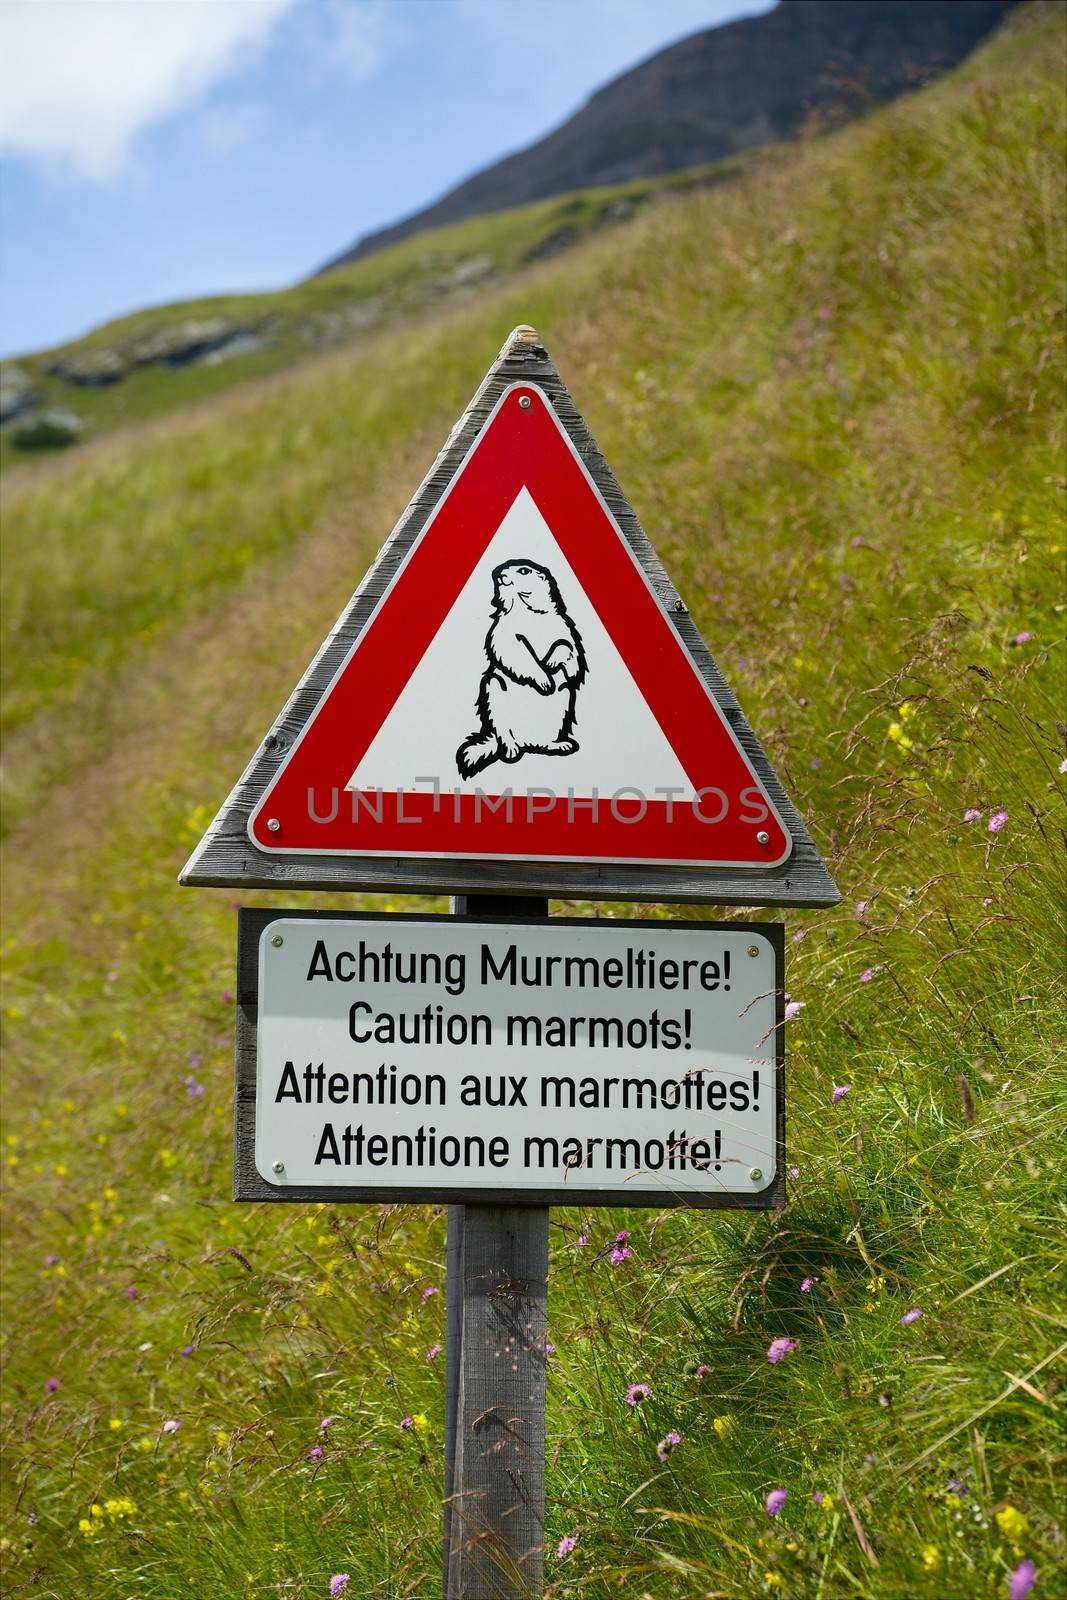 Marmots by Gudella